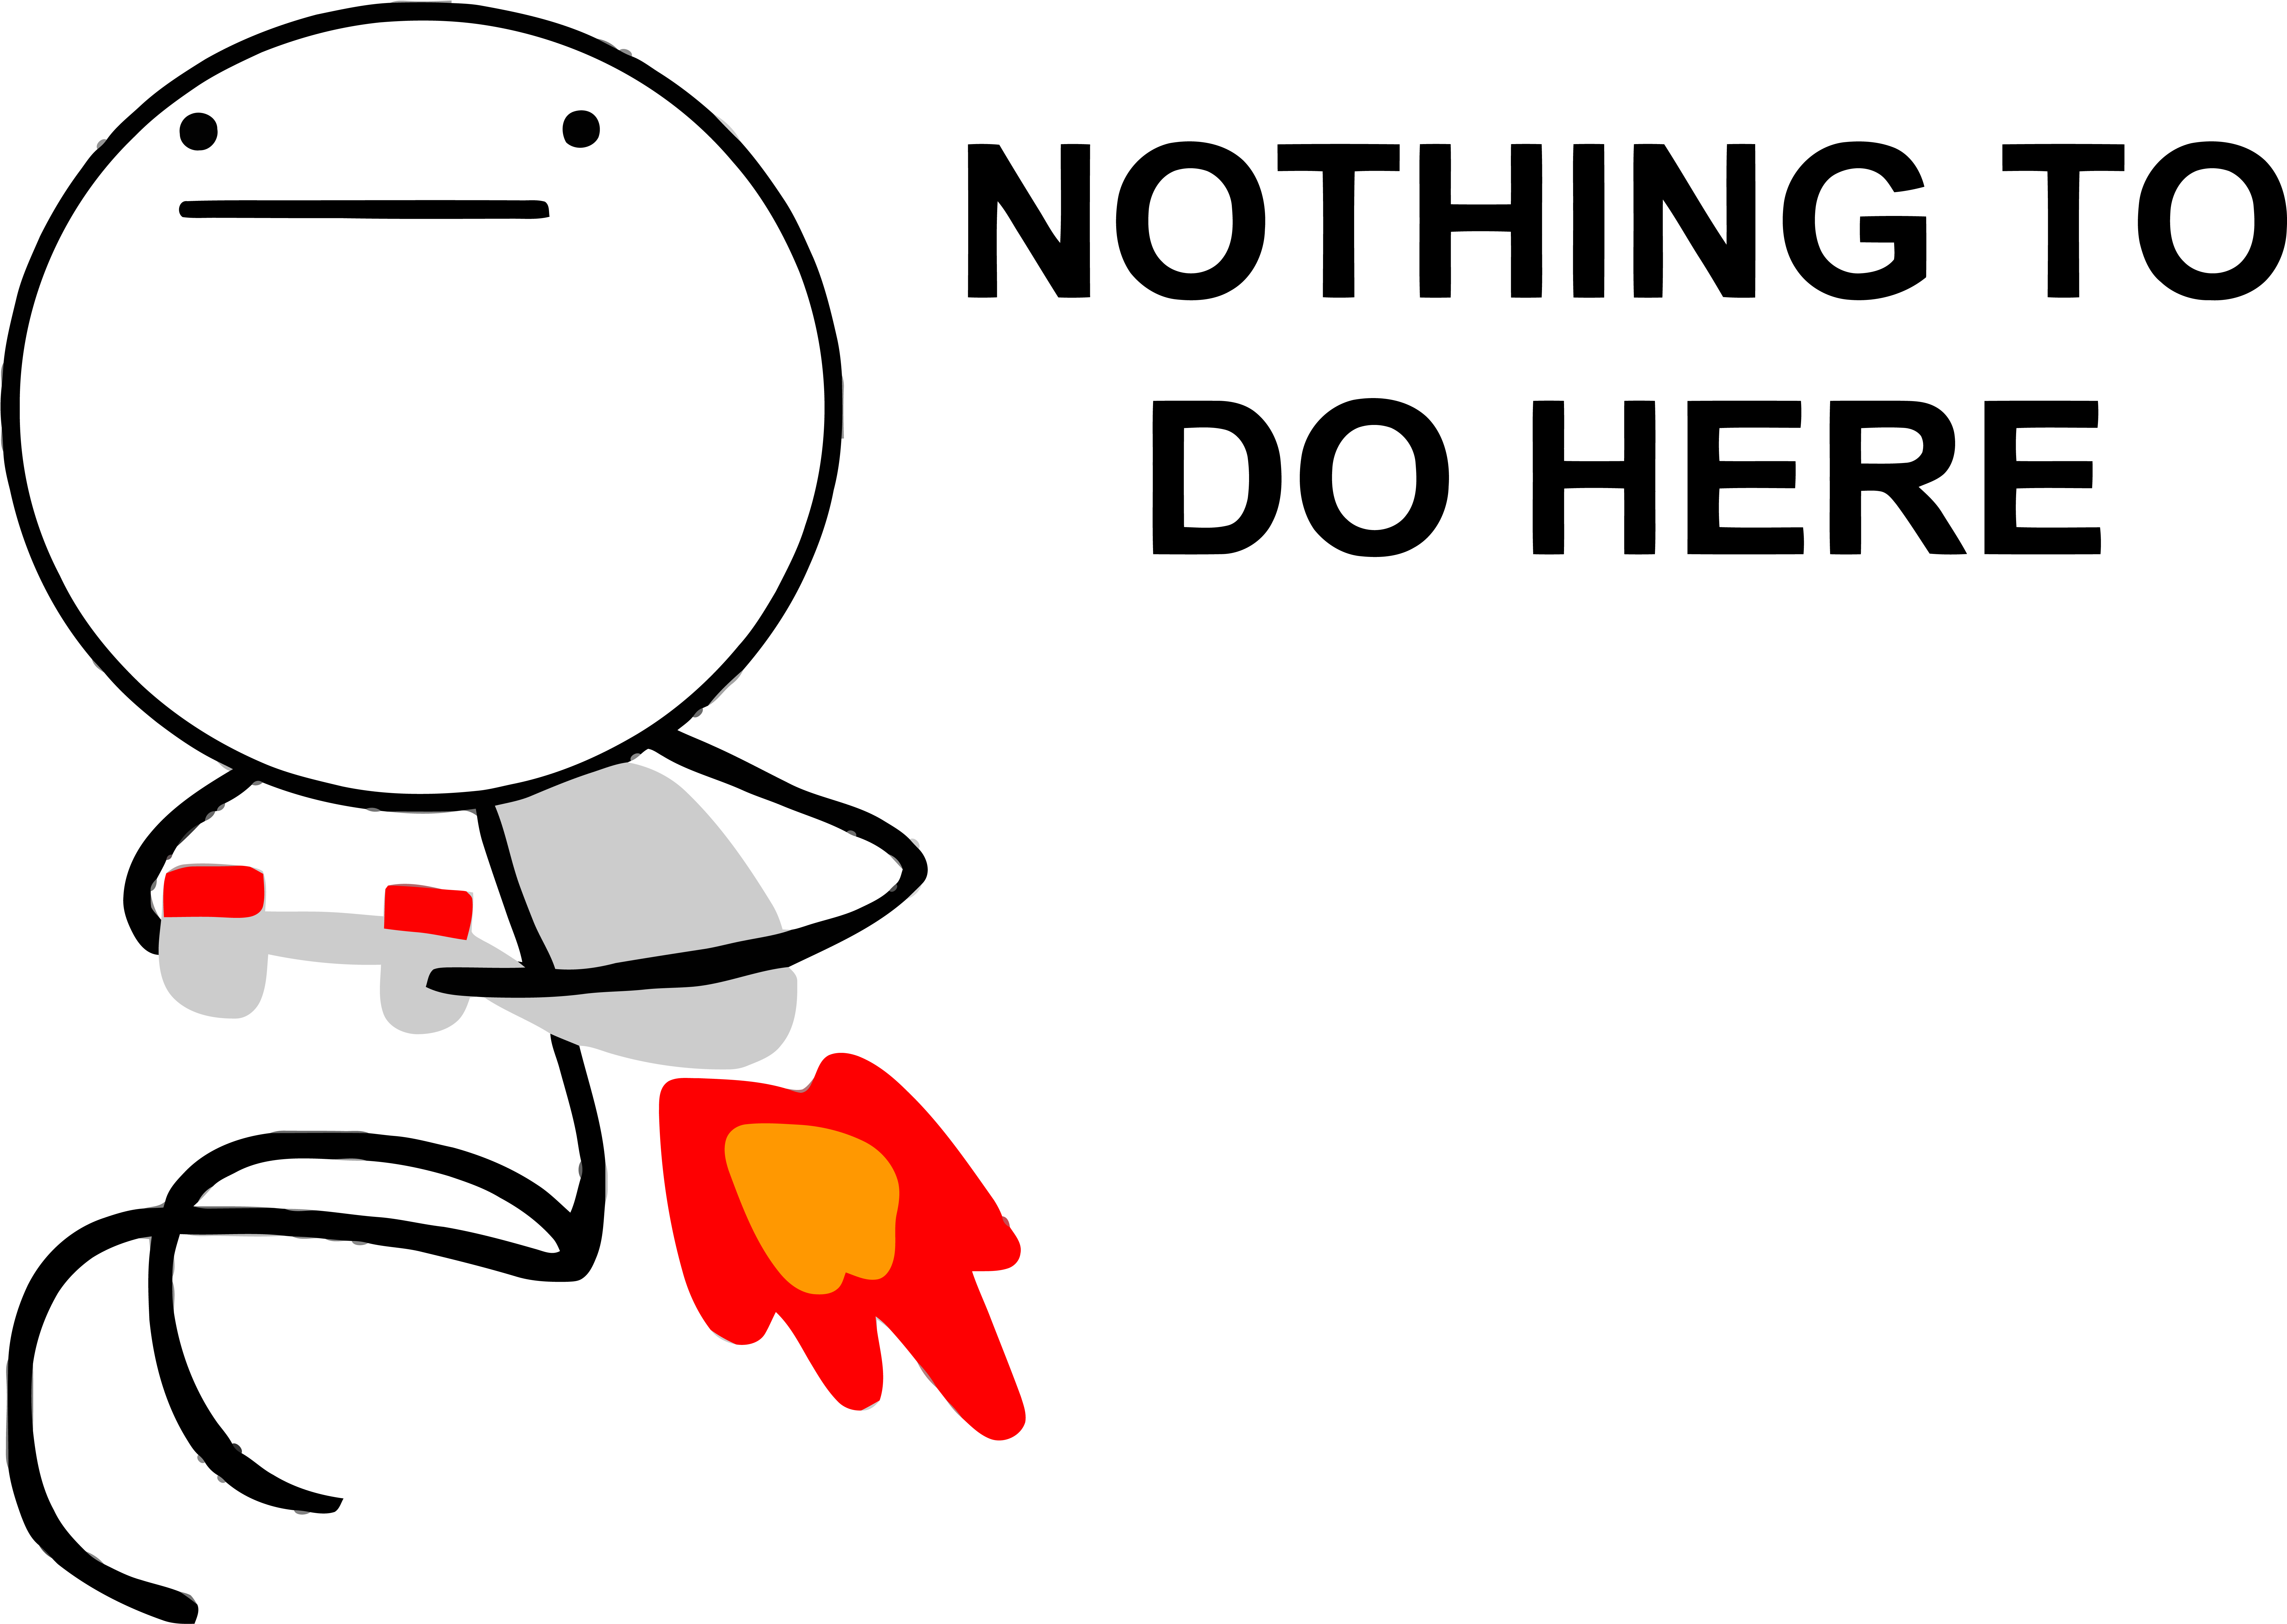 A Cartoon Of A Man Holding A Fireball